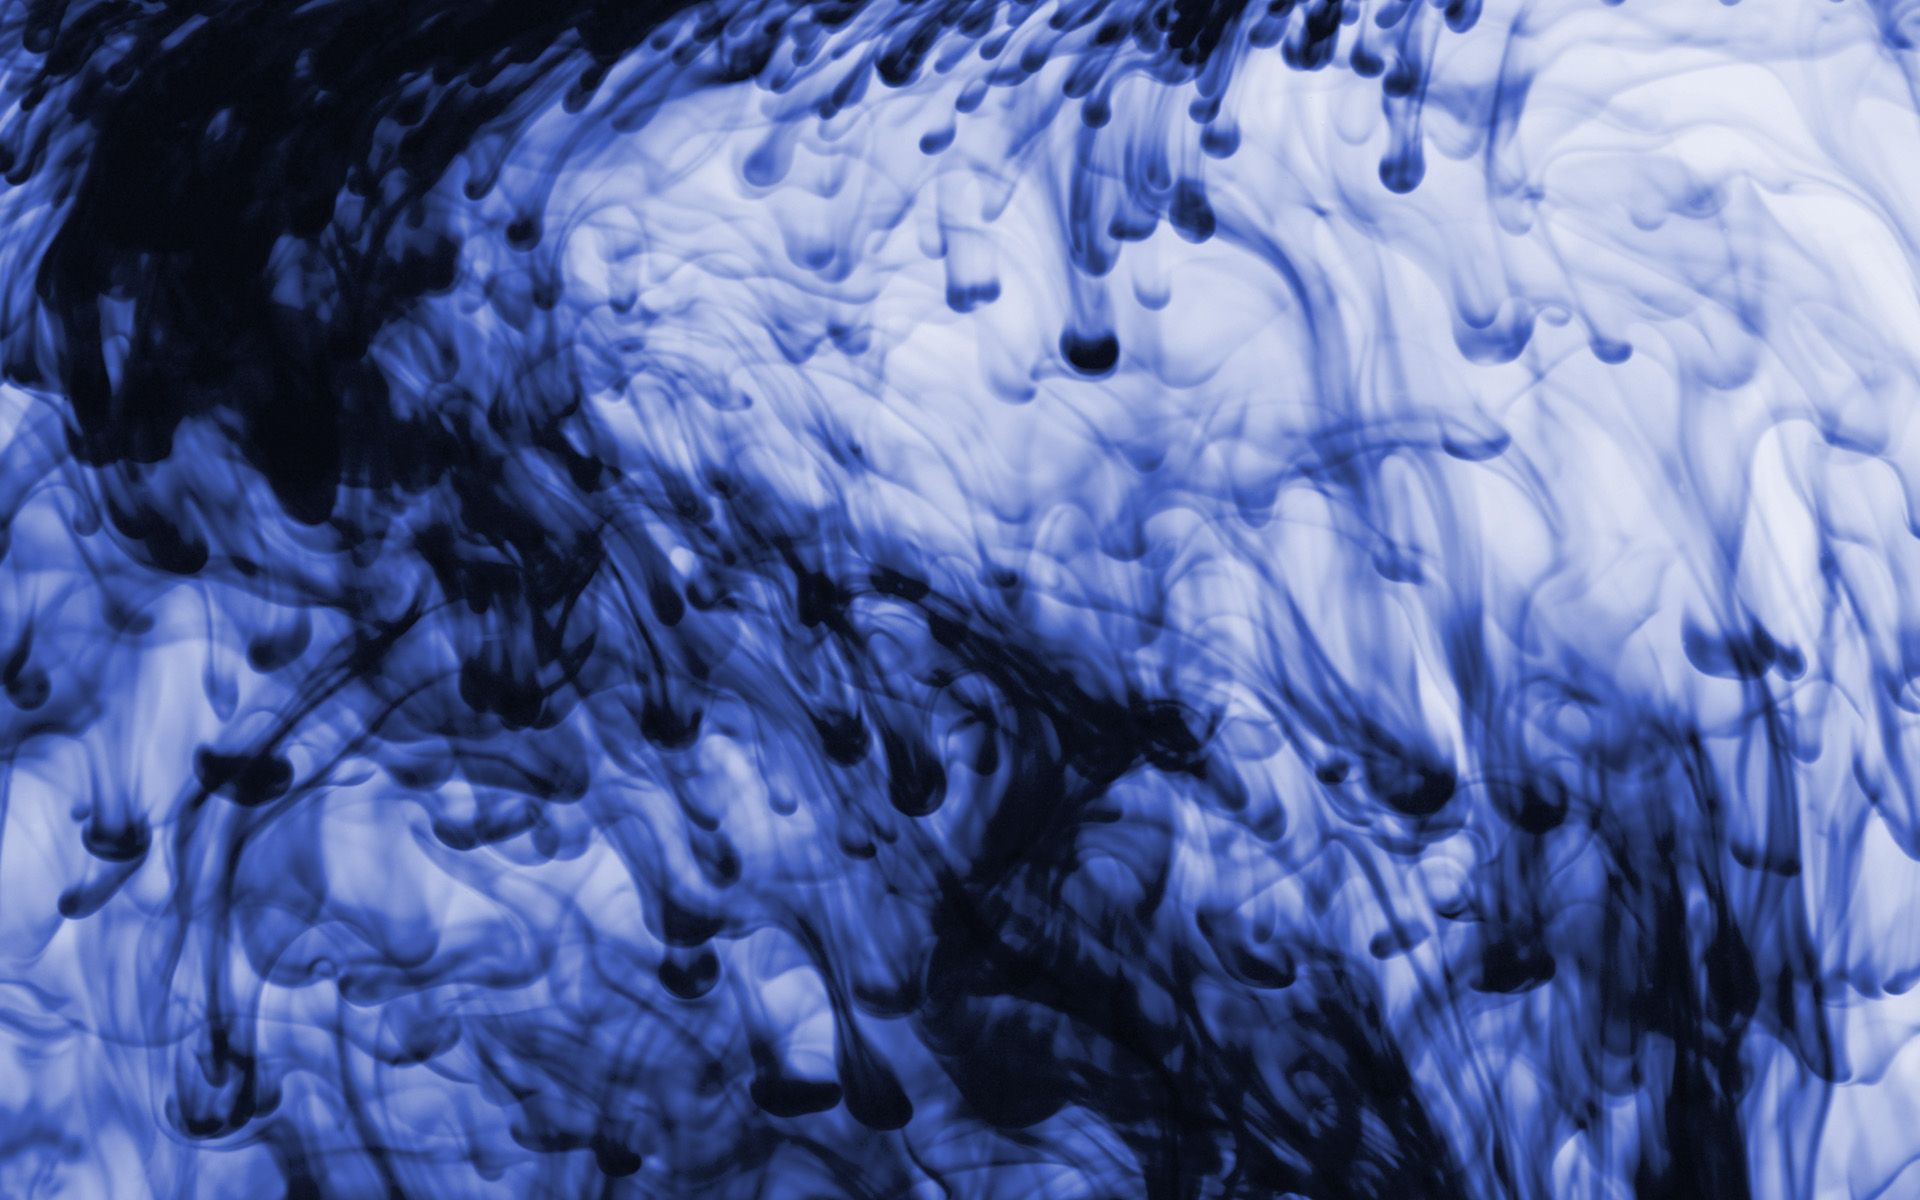 inchiostro in acqua wallpaper hd,blu,acqua,congelamento,modello,design